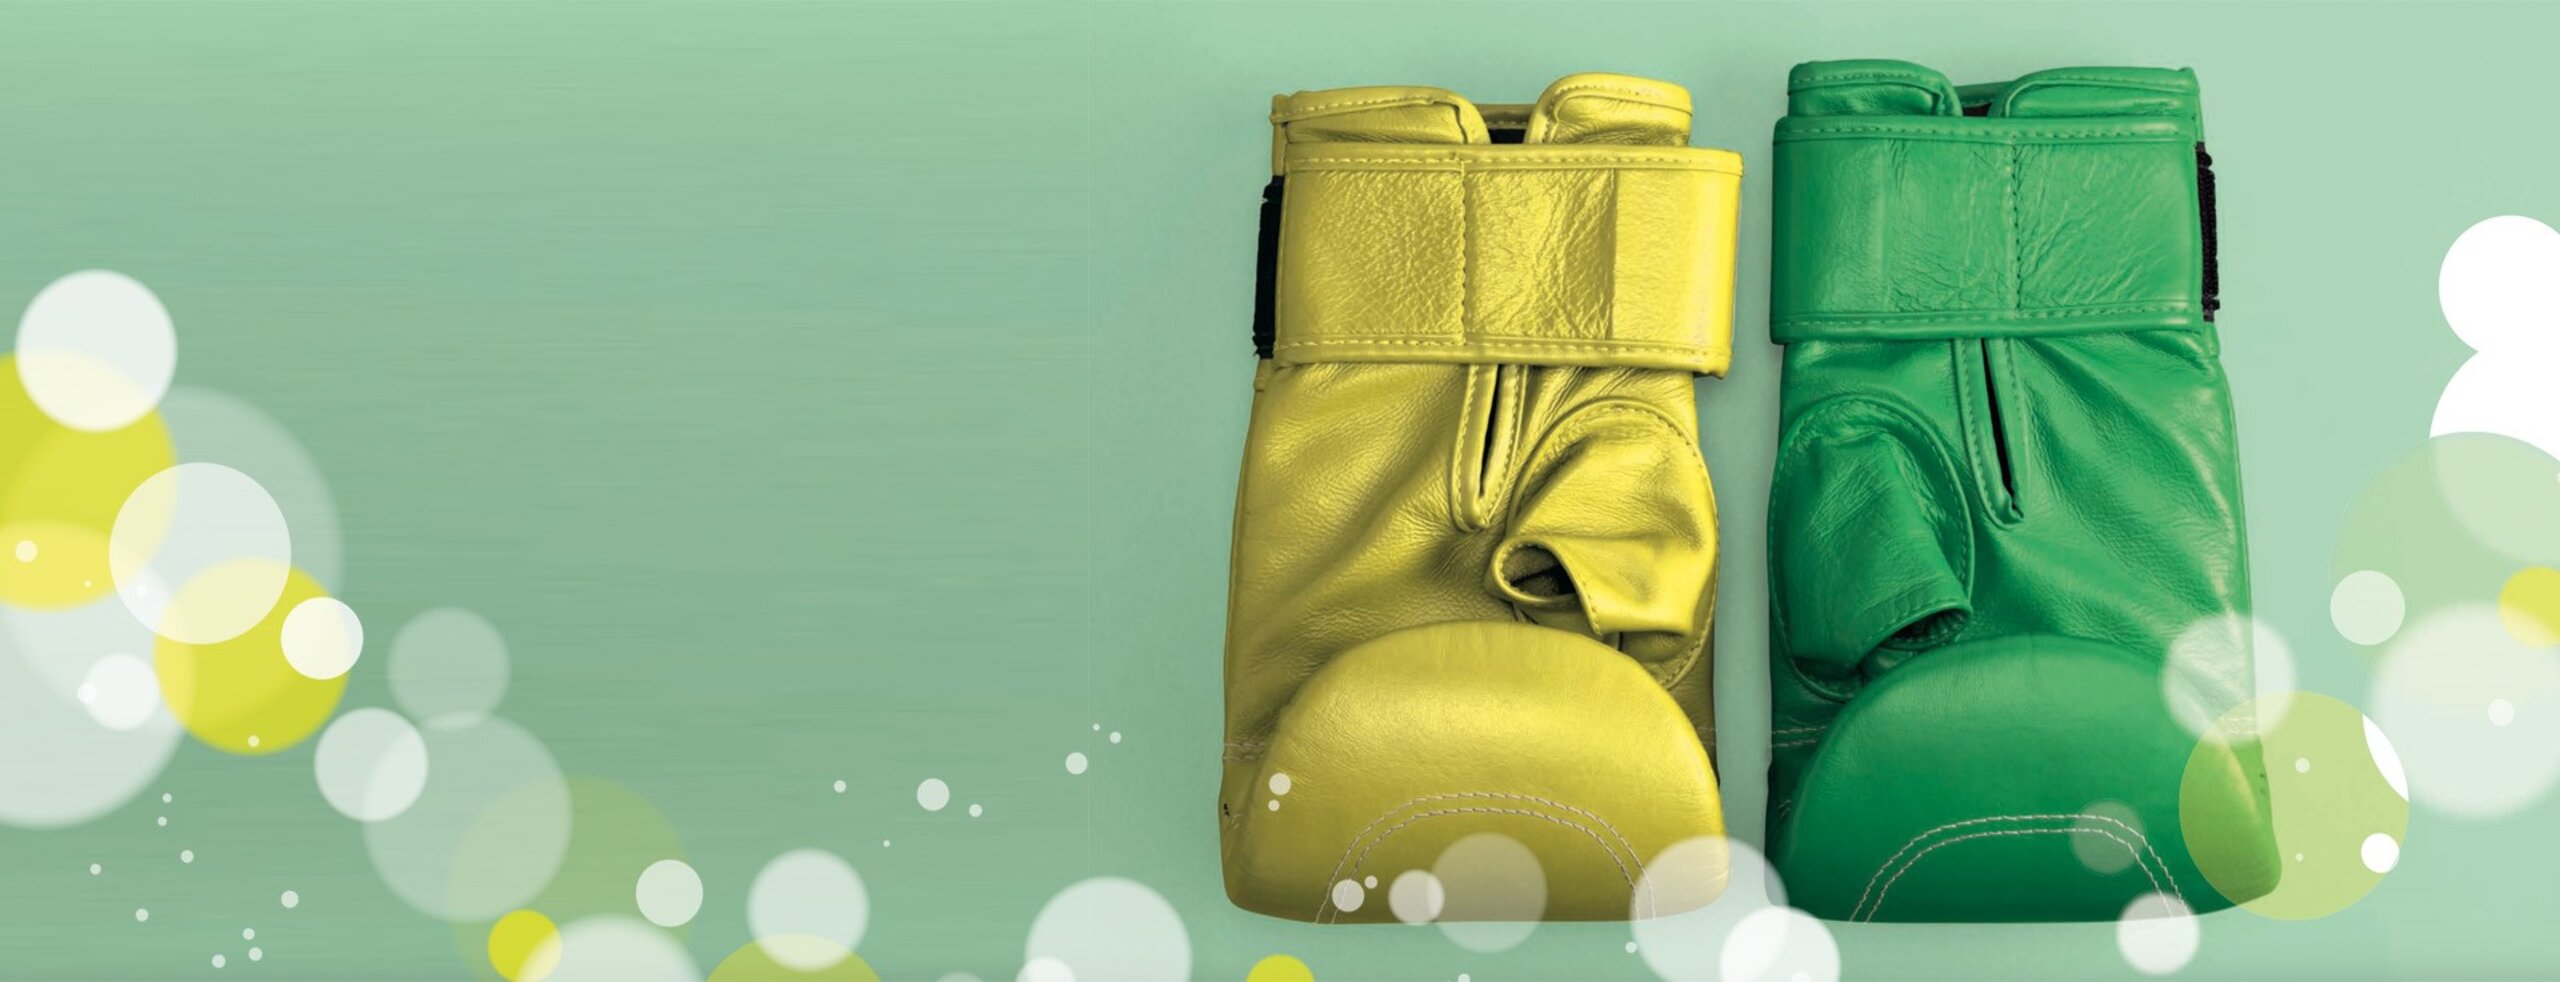 Ein grüner und ein gelber Boxhandschuh, die symbolisieren, dass Digitalisierung & Klimaneutralität Unternehmen stark machen